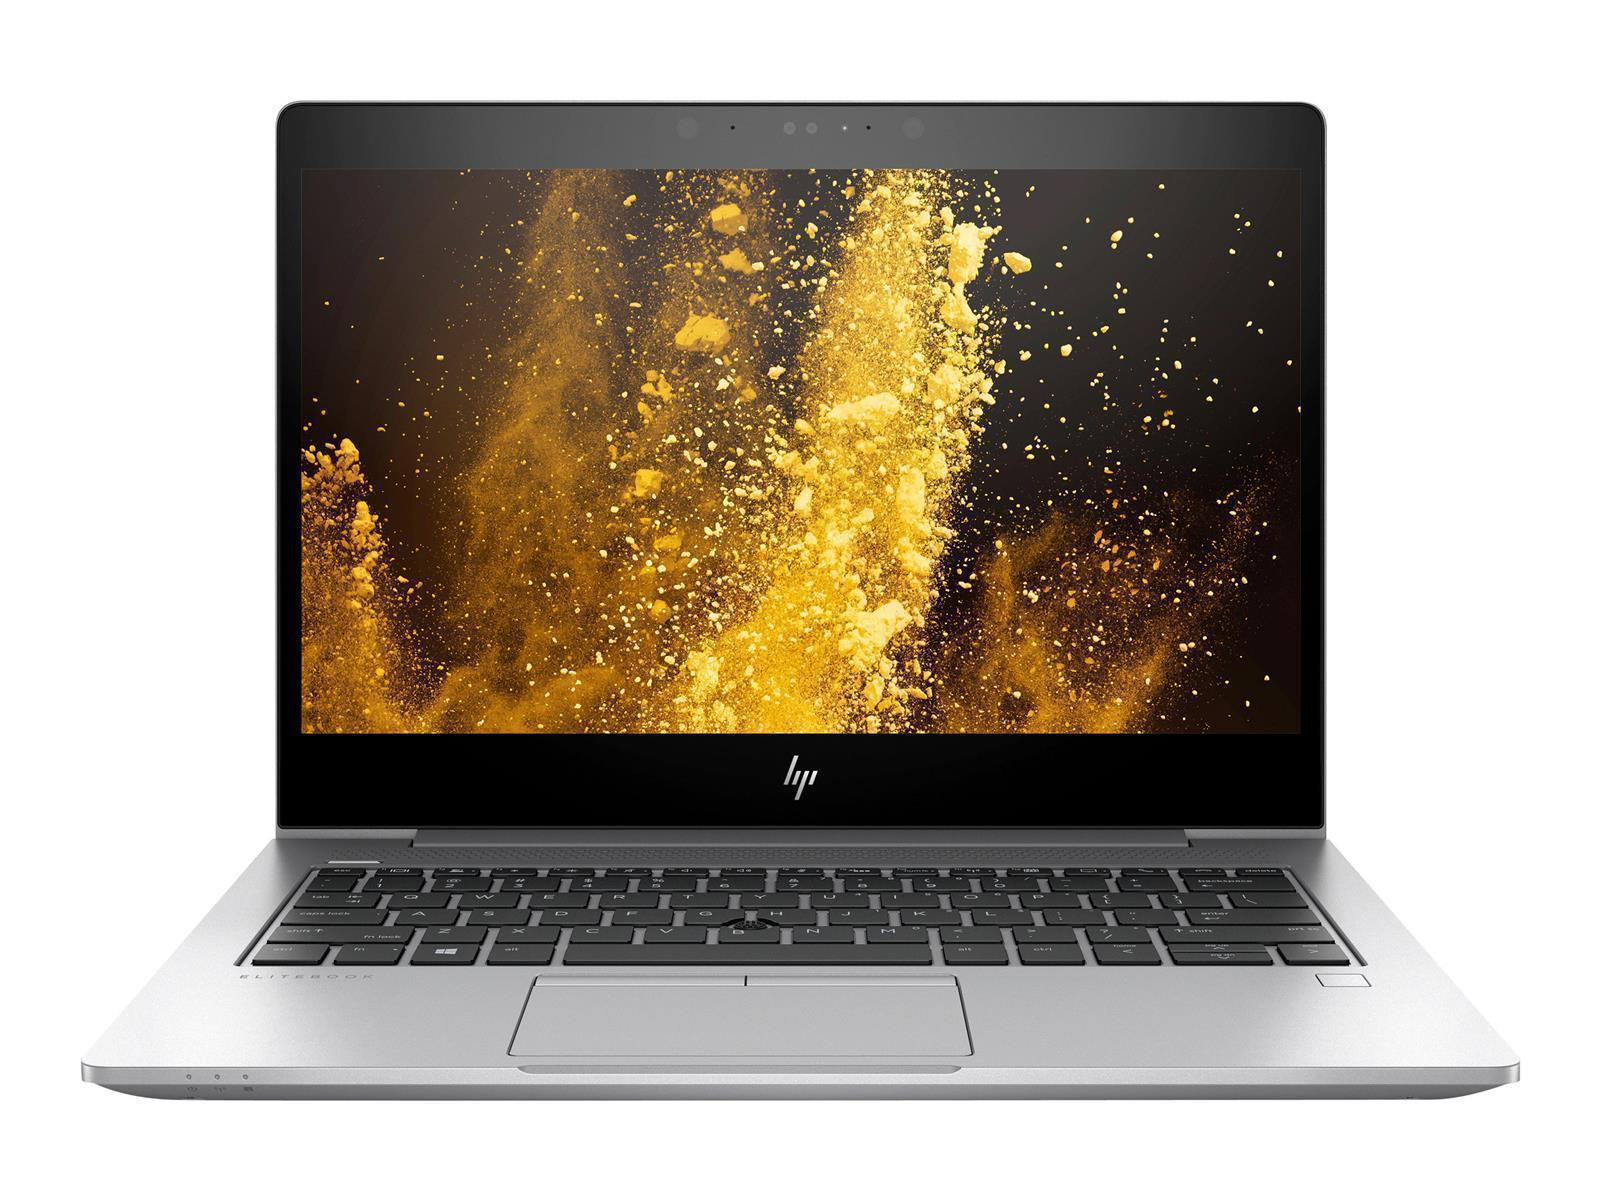 HP EliteBook 830 G5 | i5-7300U | 8GB | 256GB SSD | Full HD | Win 10 Pro | DE